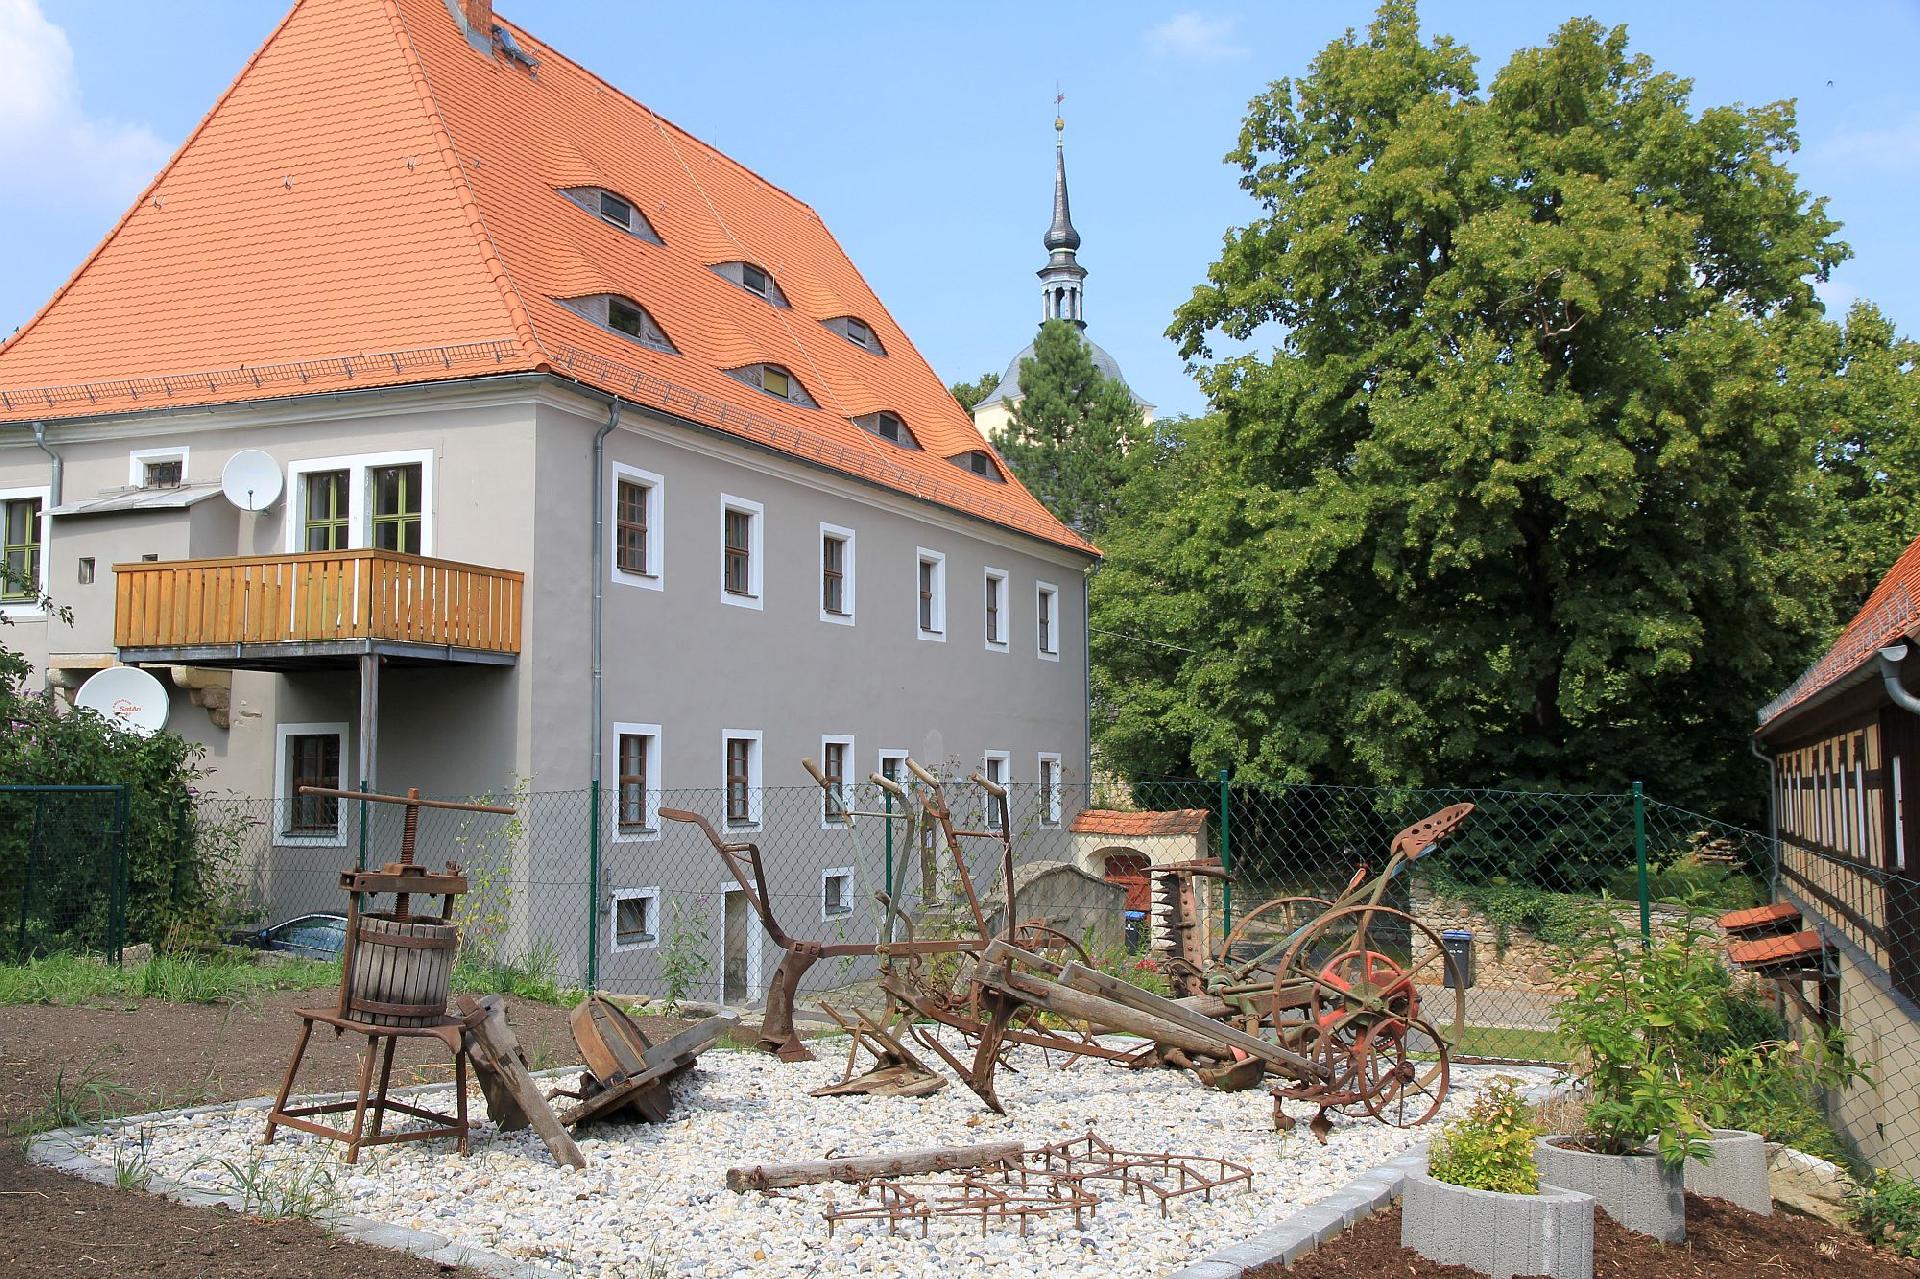 Wohnung in Maxen mit Terrasse, Garten und Grill Ferienwohnung in Sachsen